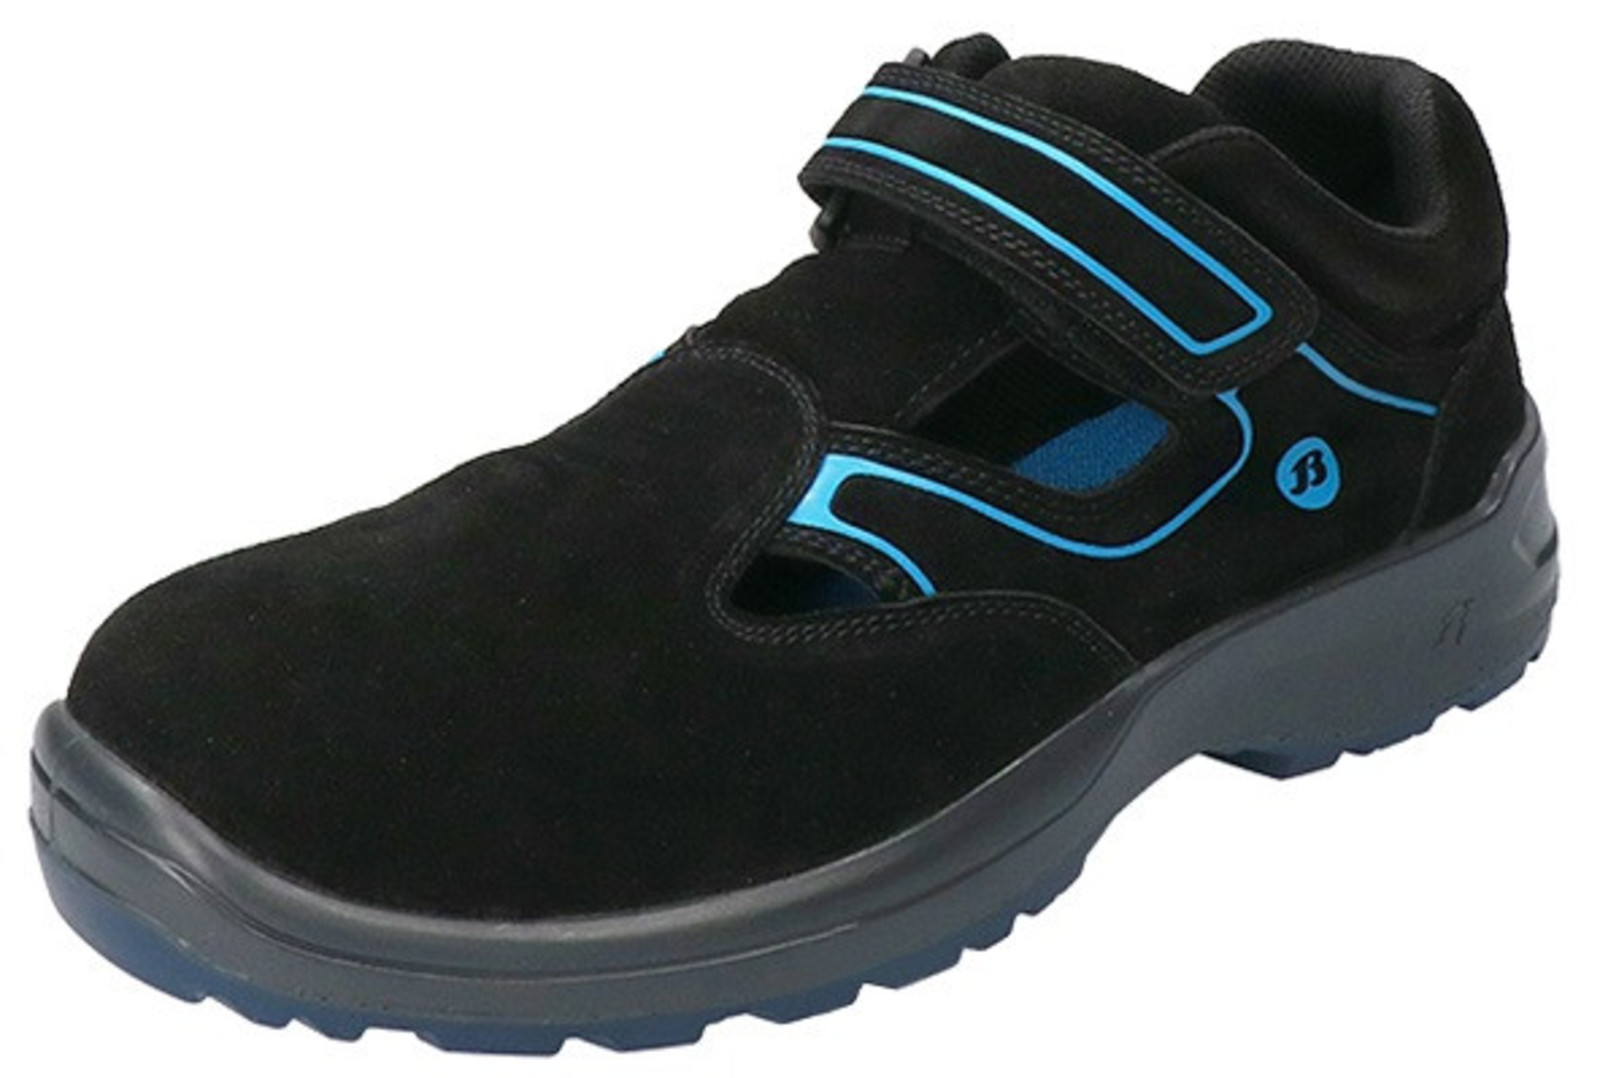 Bezpečnostné sandále Baťa Falcon ESD S1 - veľkosť: 37, farba: čierna